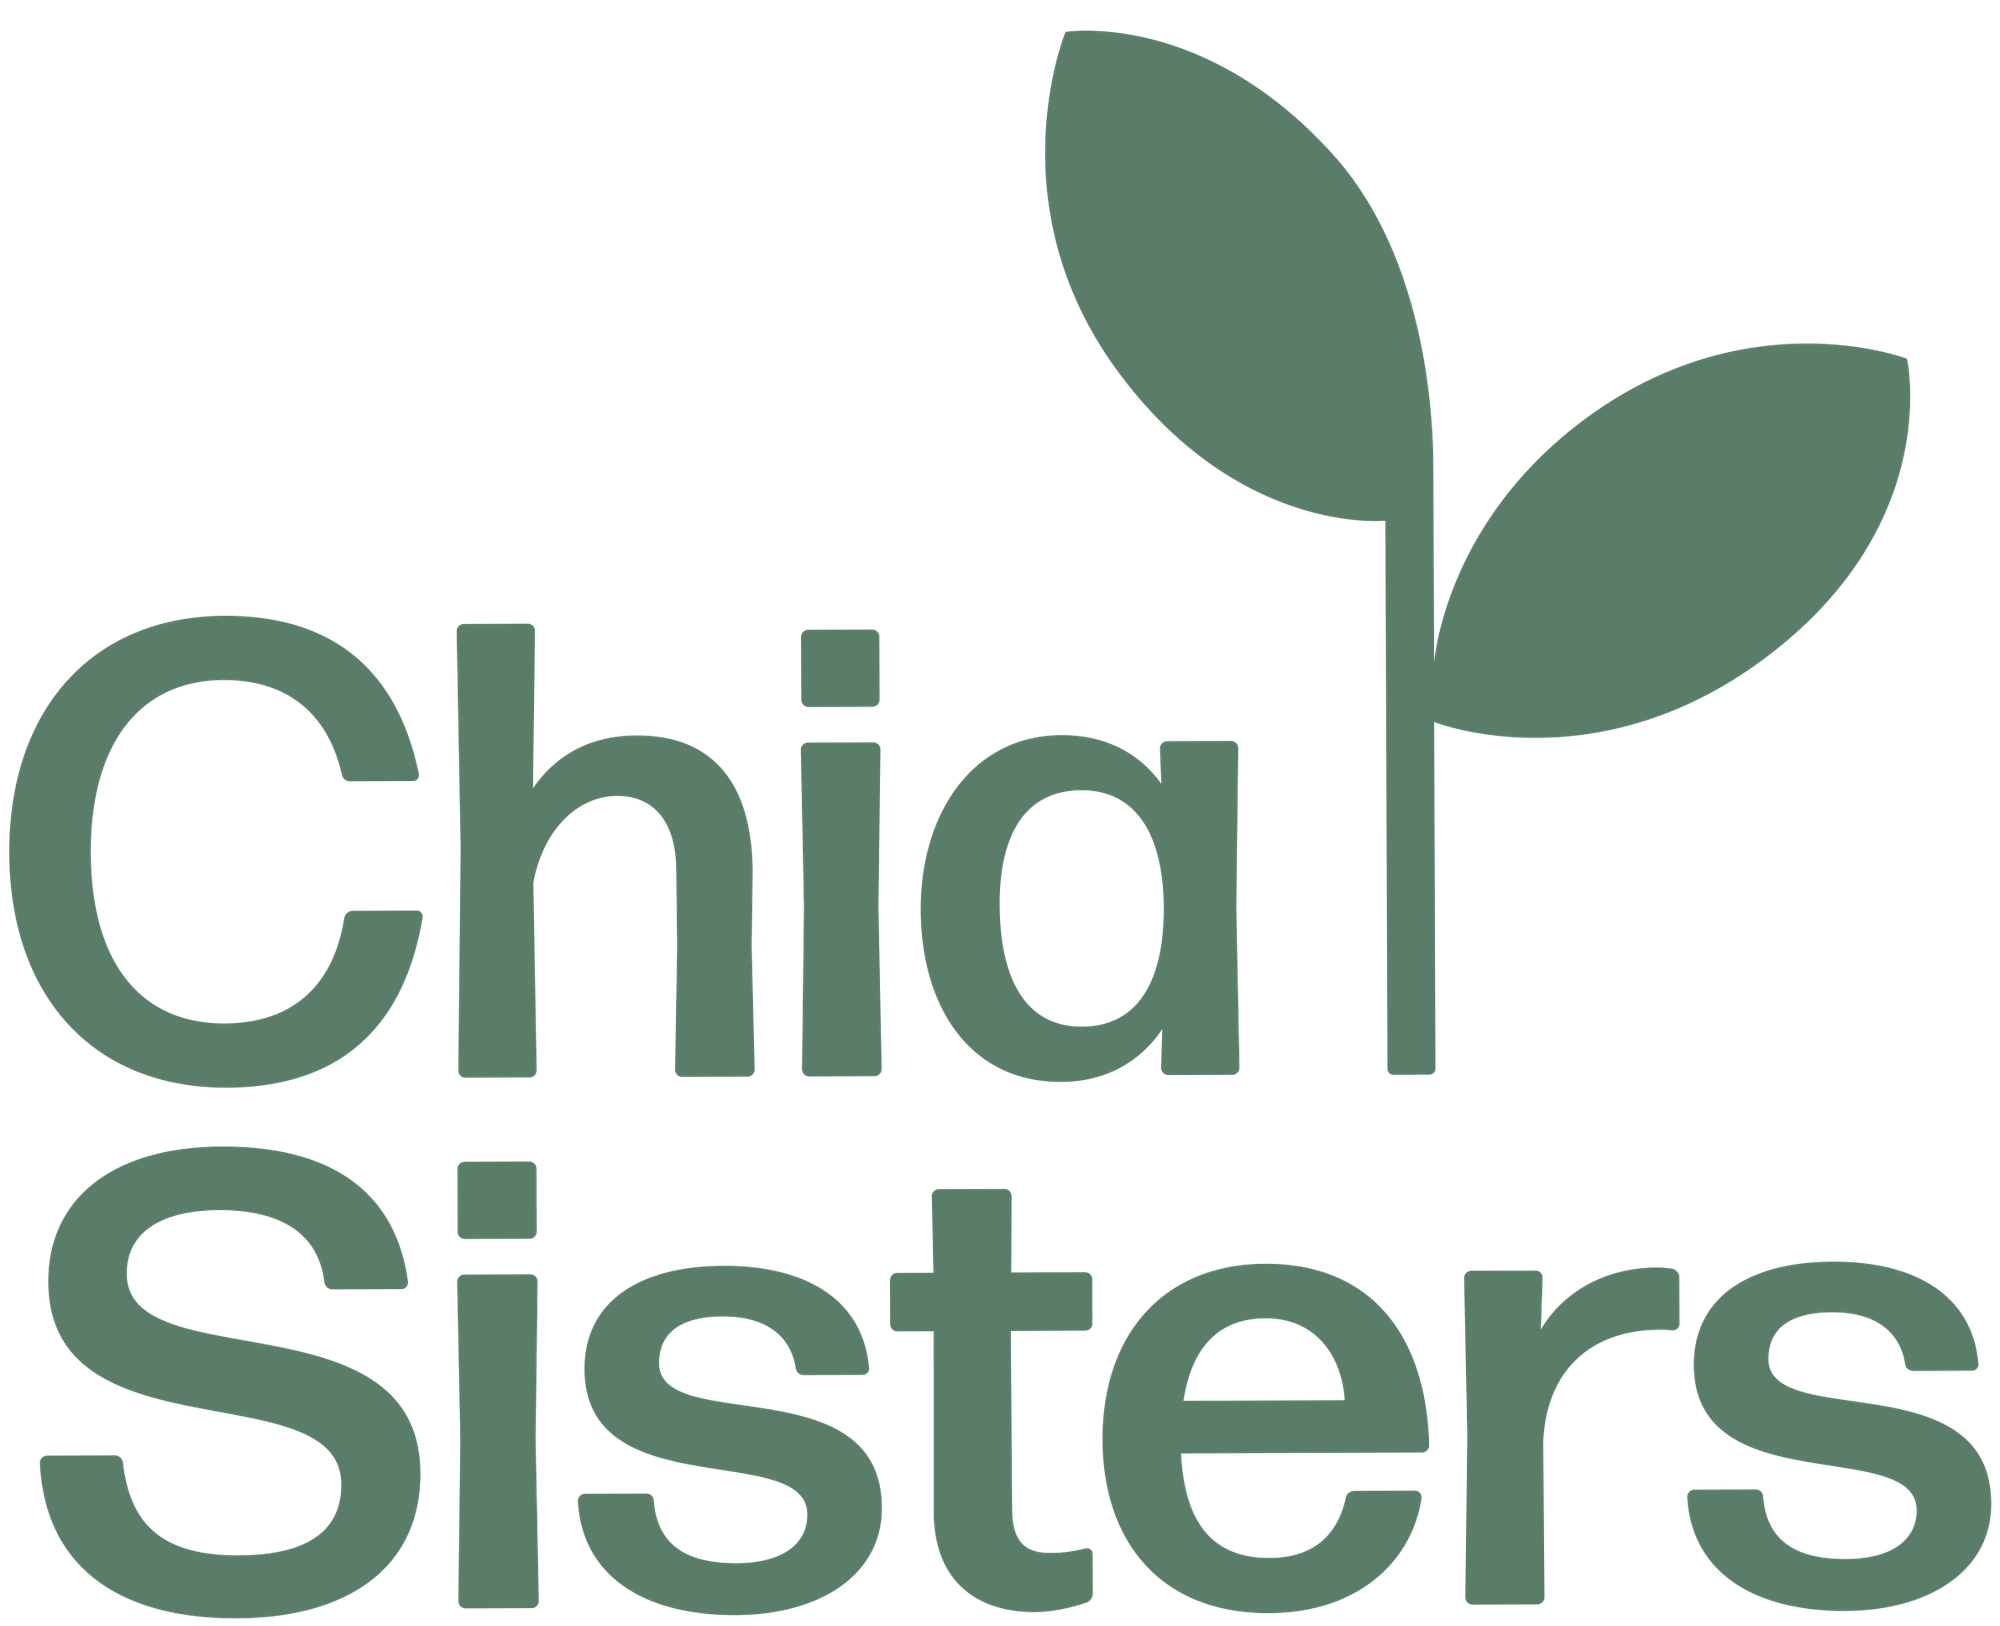 Chia Sisters